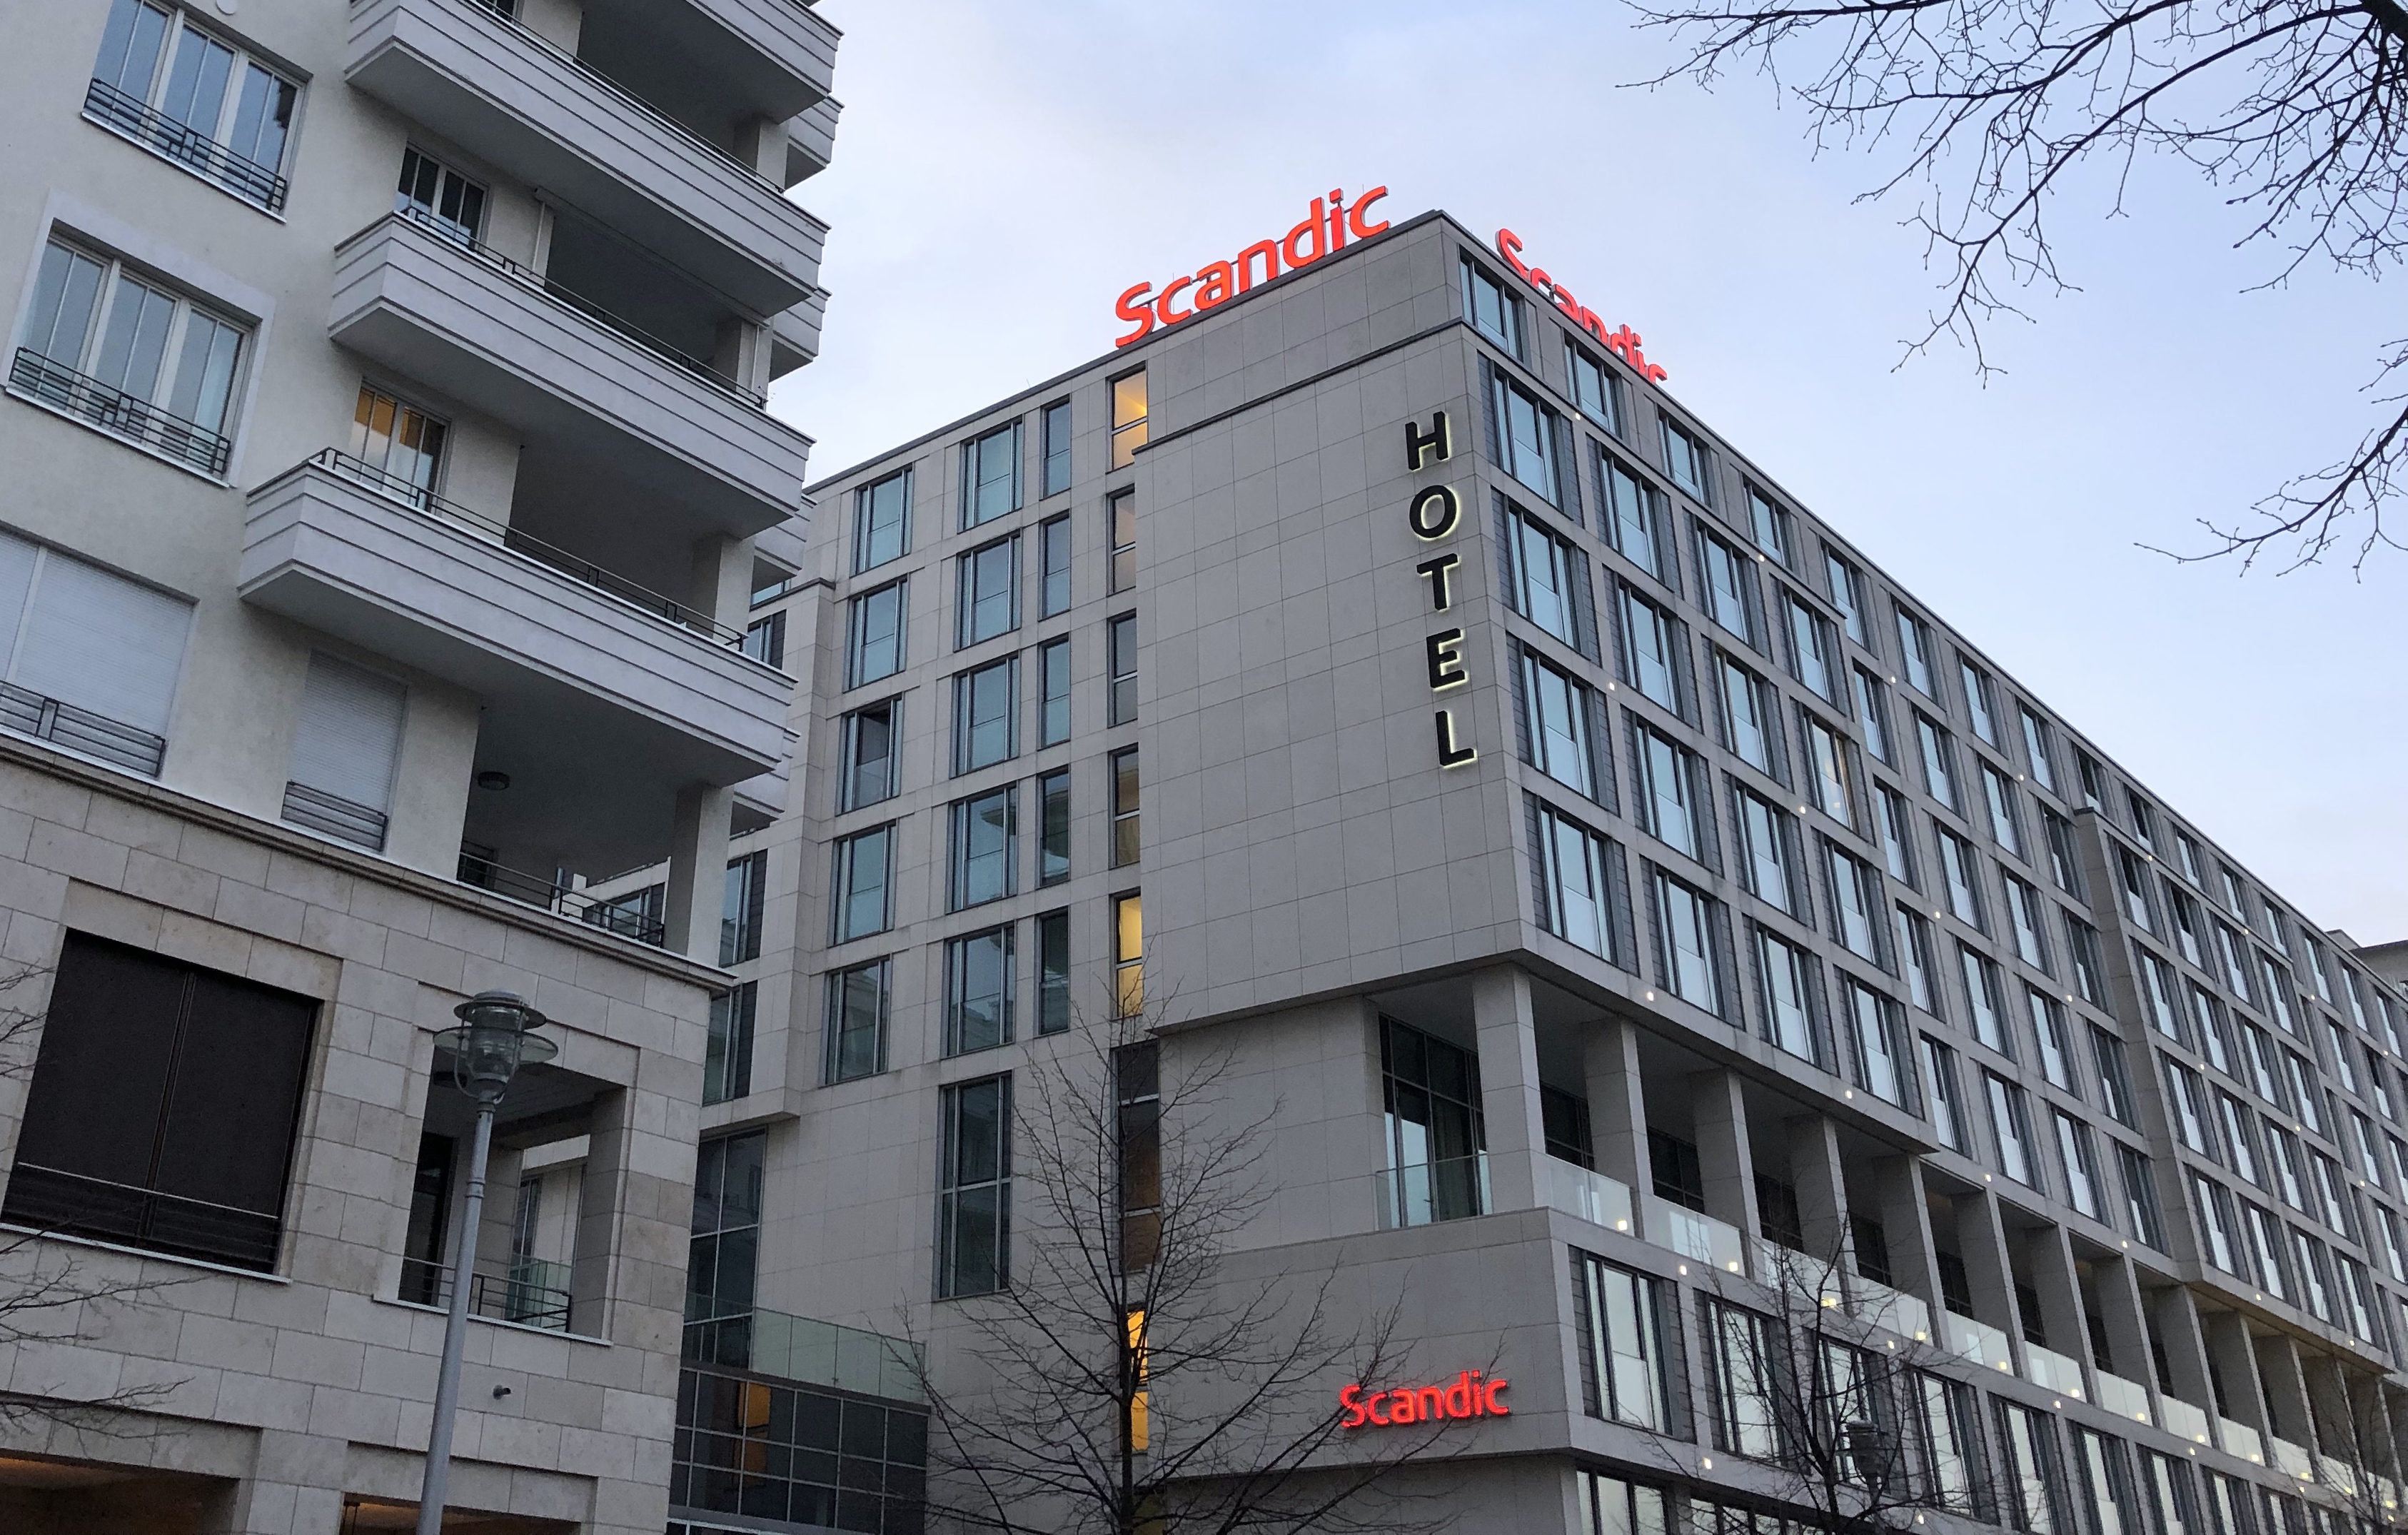 		Am Wochenende 20% Rabatt in den Scandic Hotels sichern
	